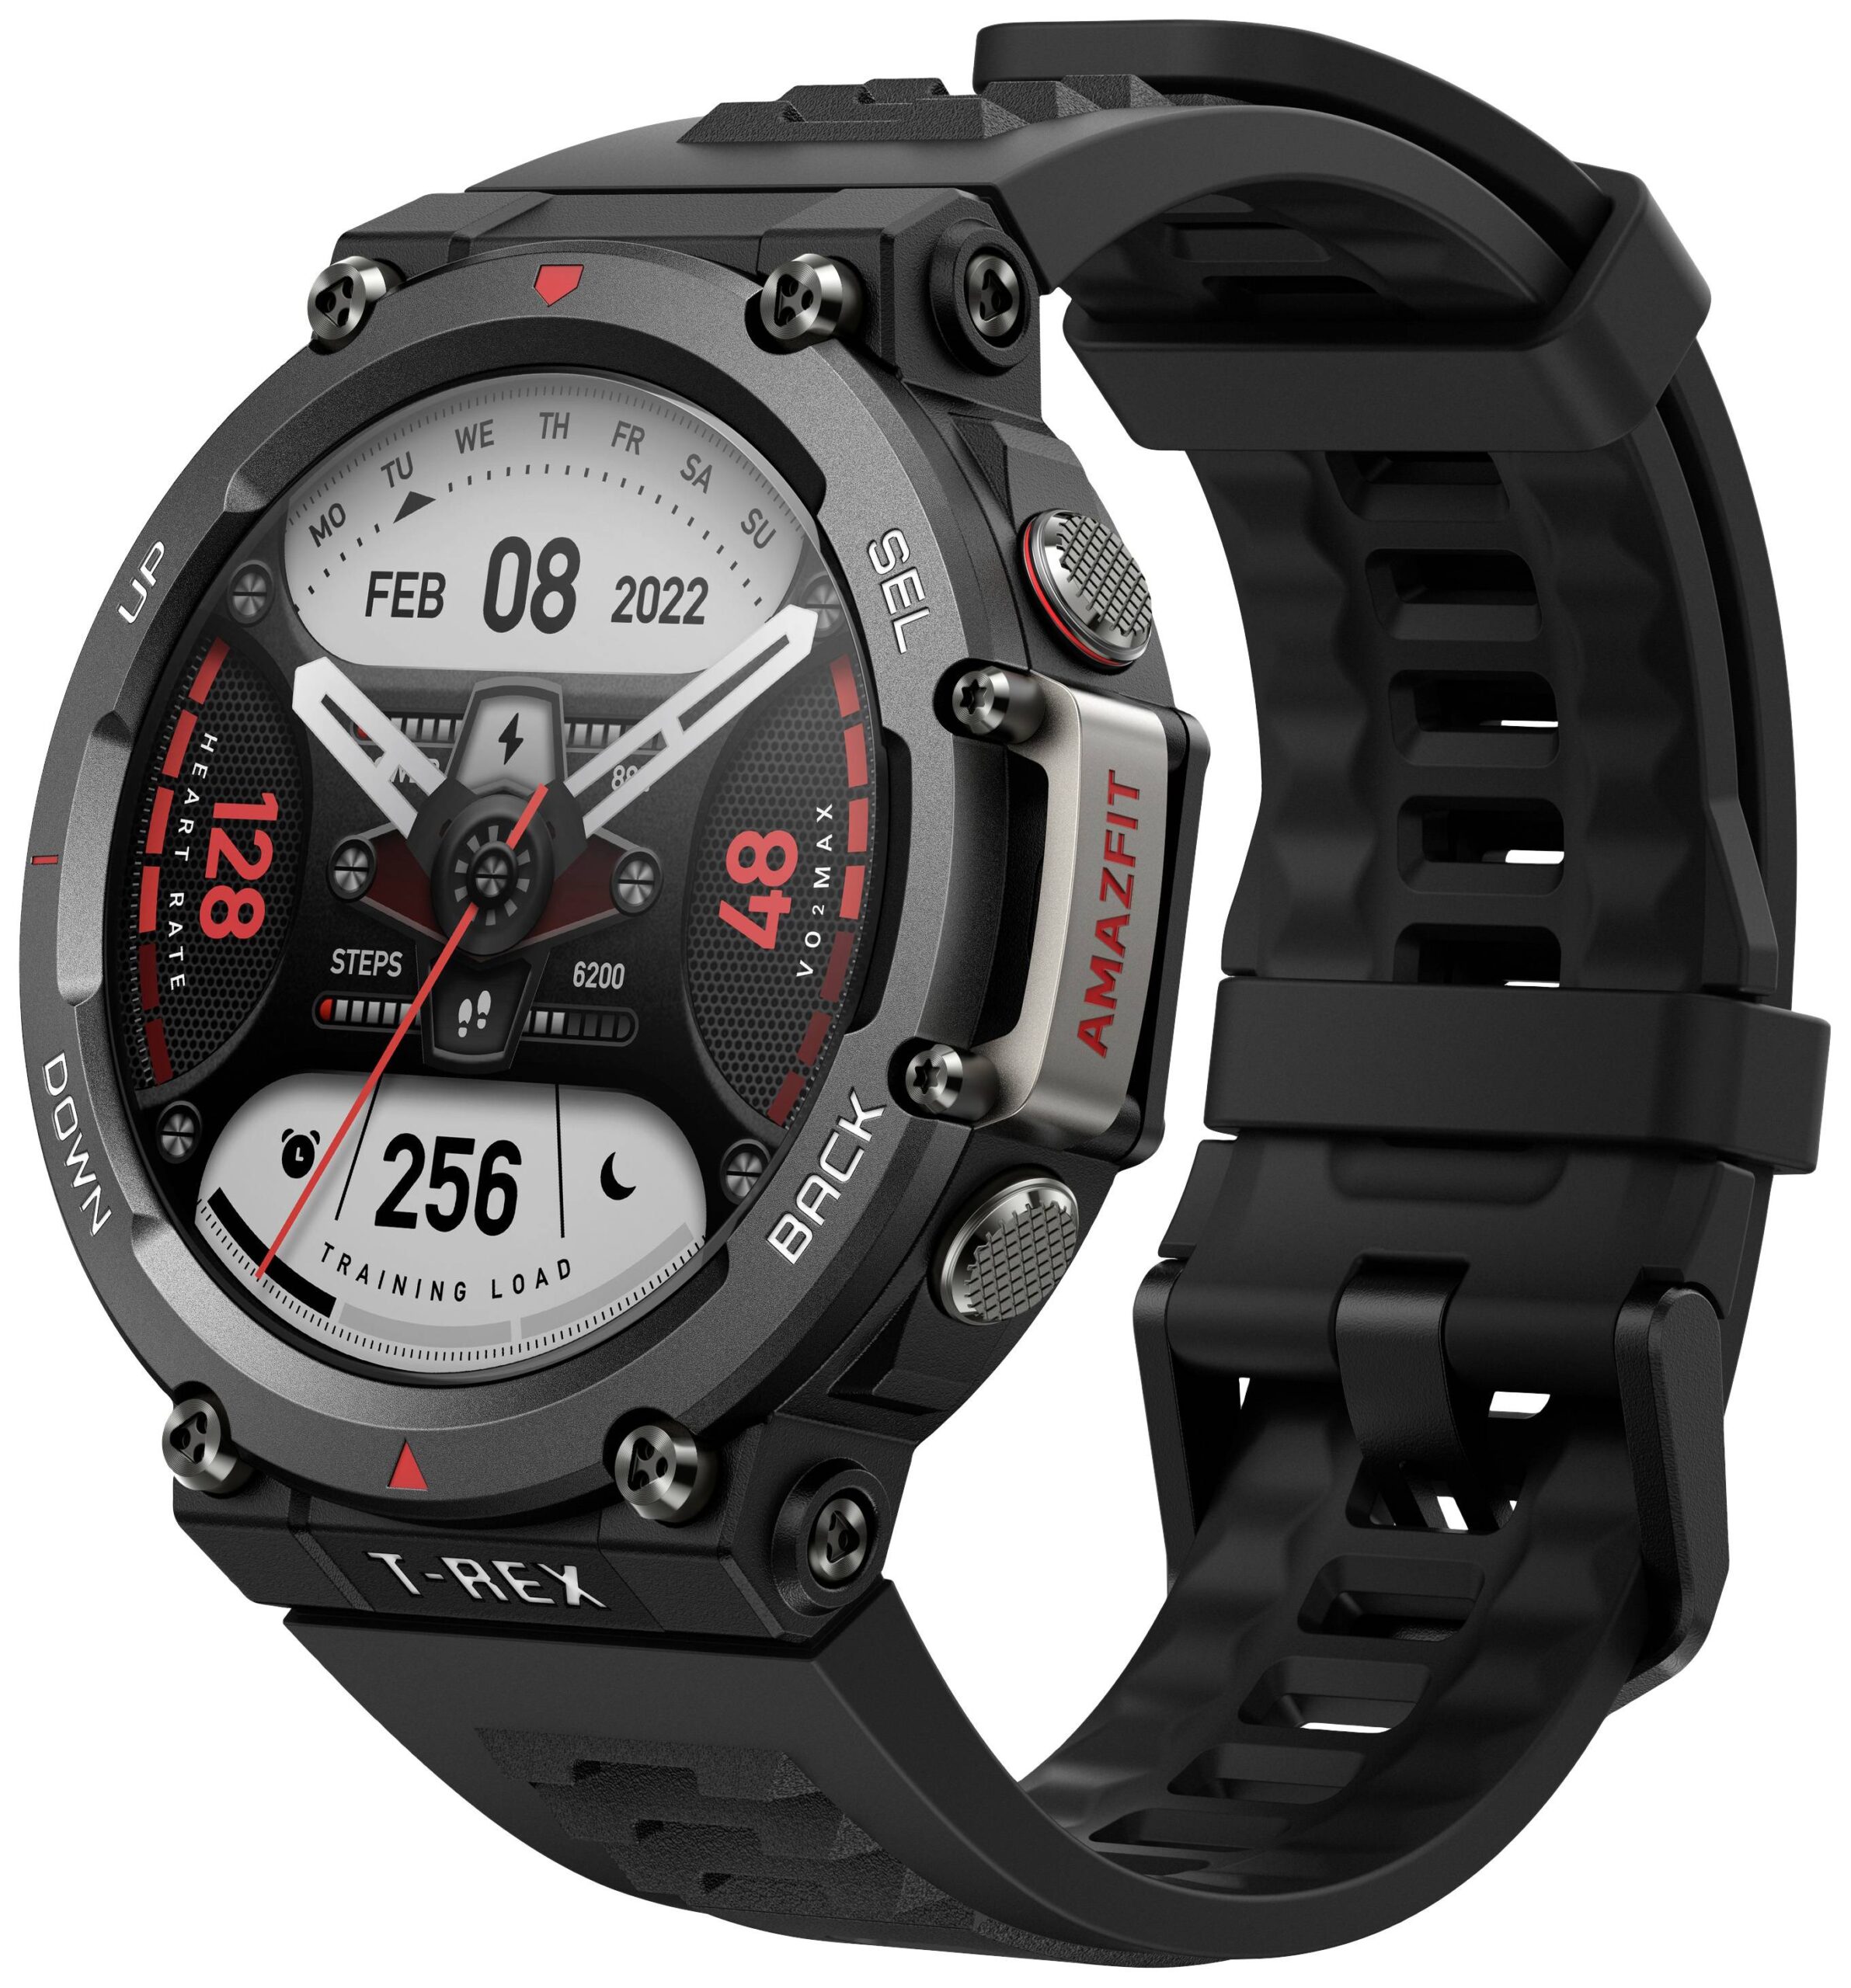 T-REX 2 Smartwatch — Digital Walker